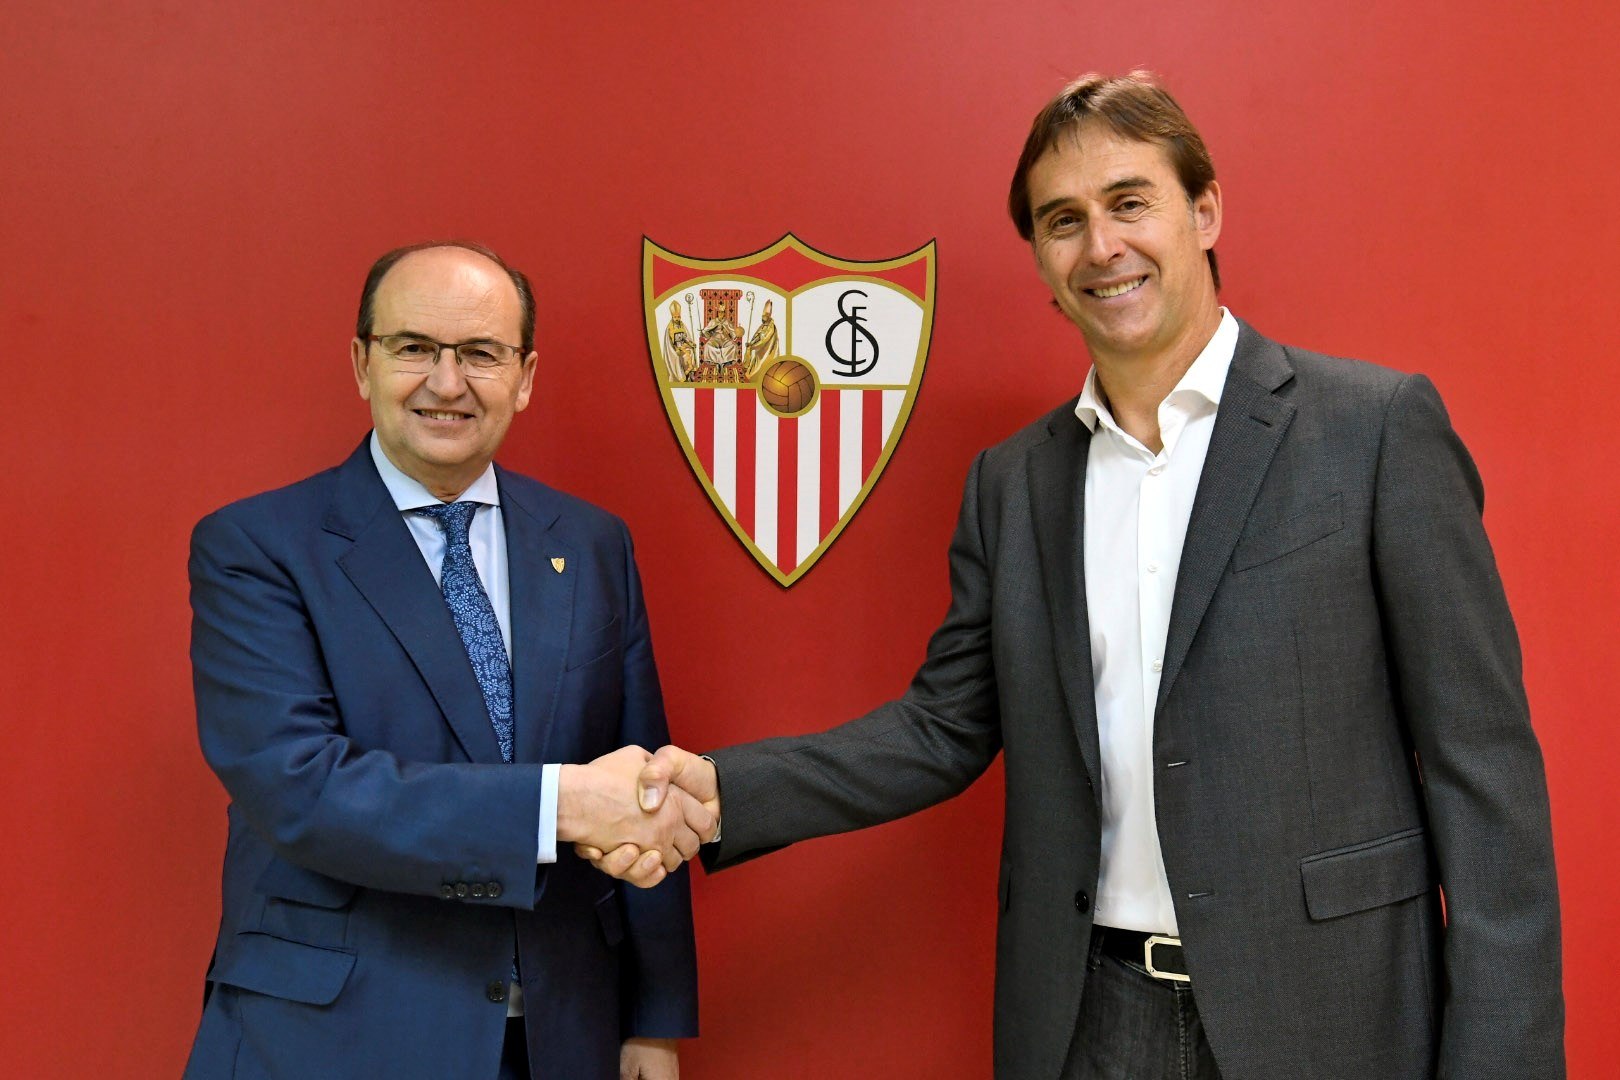 El presidente sevillista, José Castro estrecha la mano a Julen Lopetegui, como nuevo entrenador del club Sevilla. (Foto Prensa Libre: EFE)